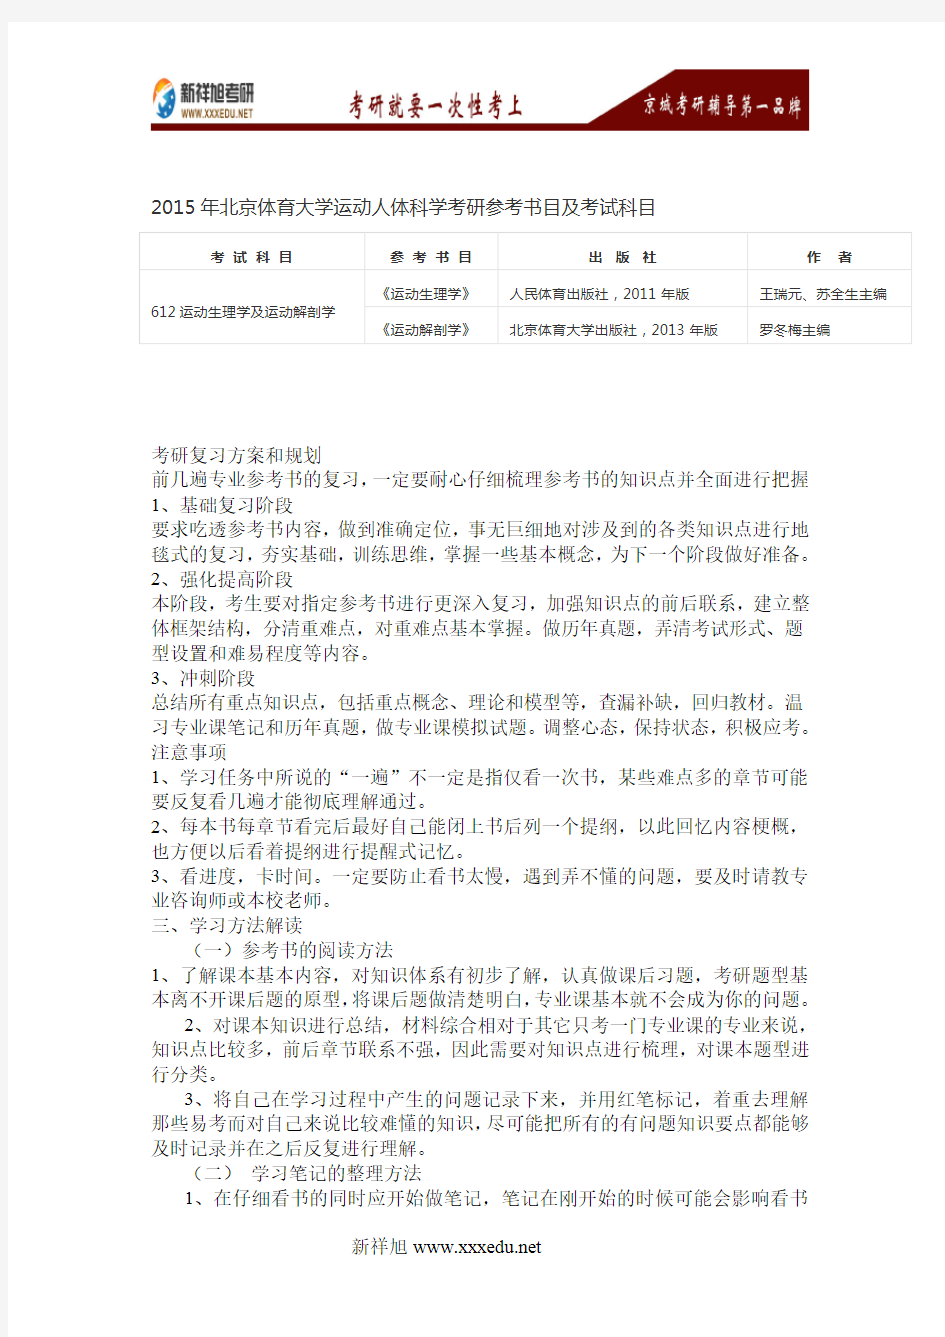 2016年北京体育大学运动人体科学考研参考书目及考试科目